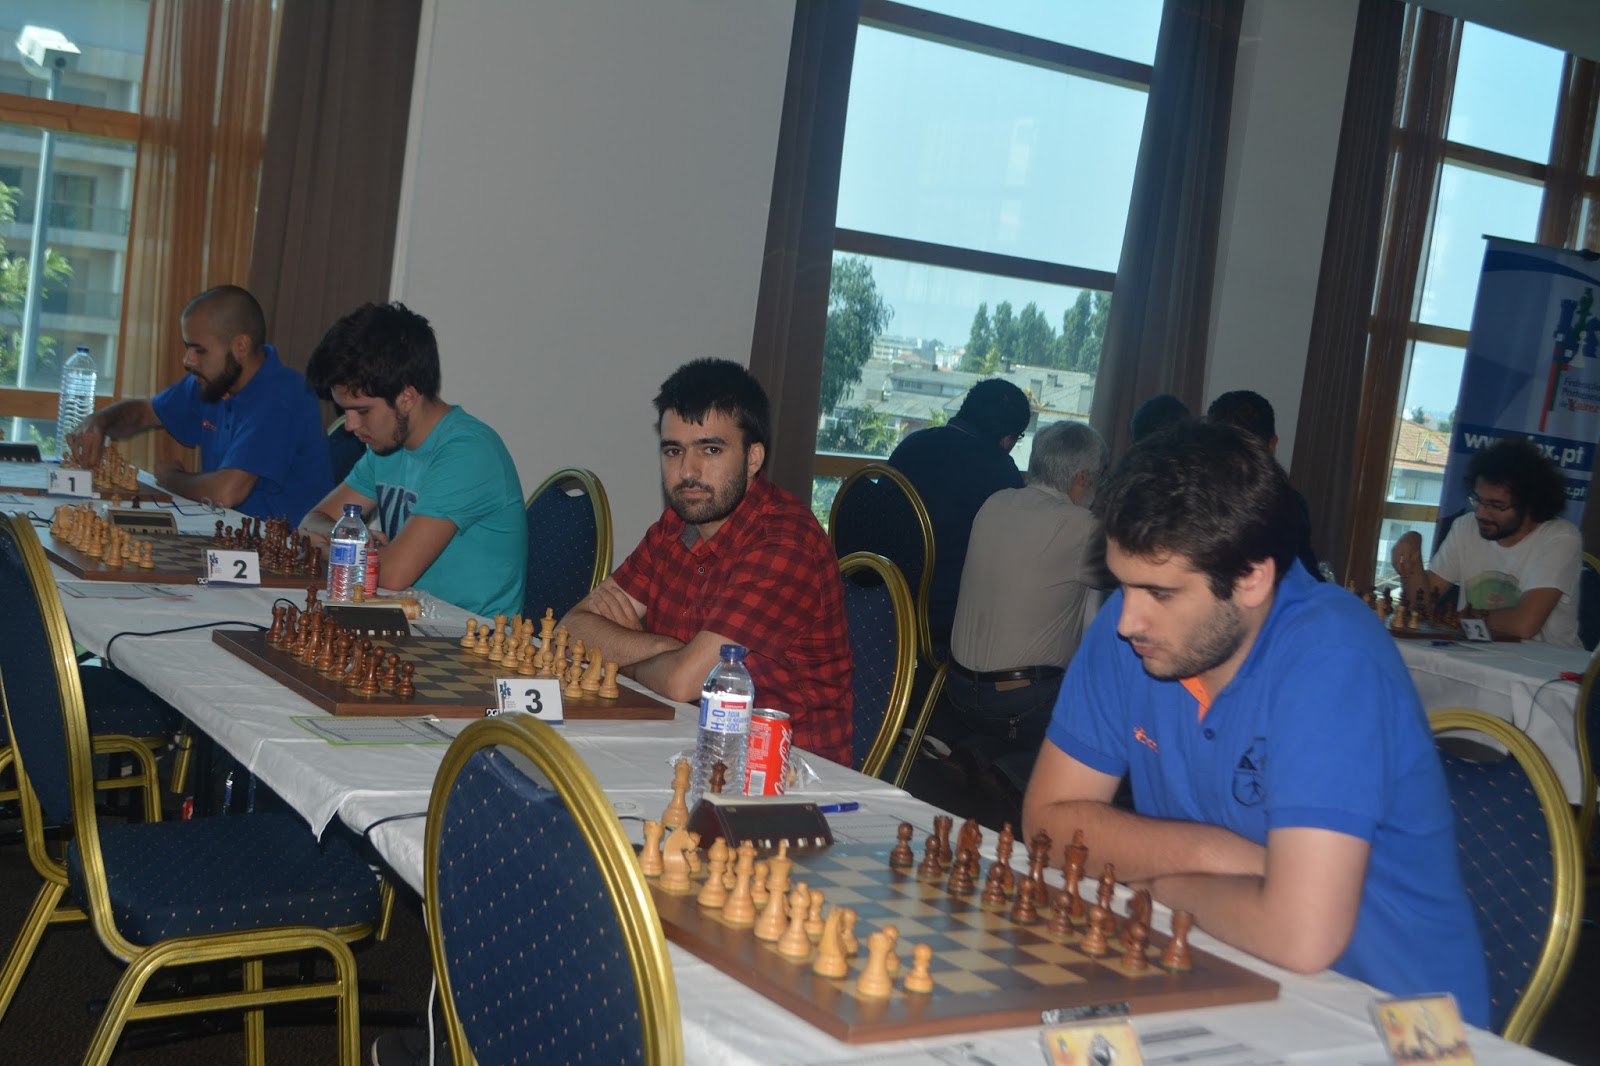 Primeiro torneio de xadrez de 2022 será realizado neste sábado em Santarém, santarém região